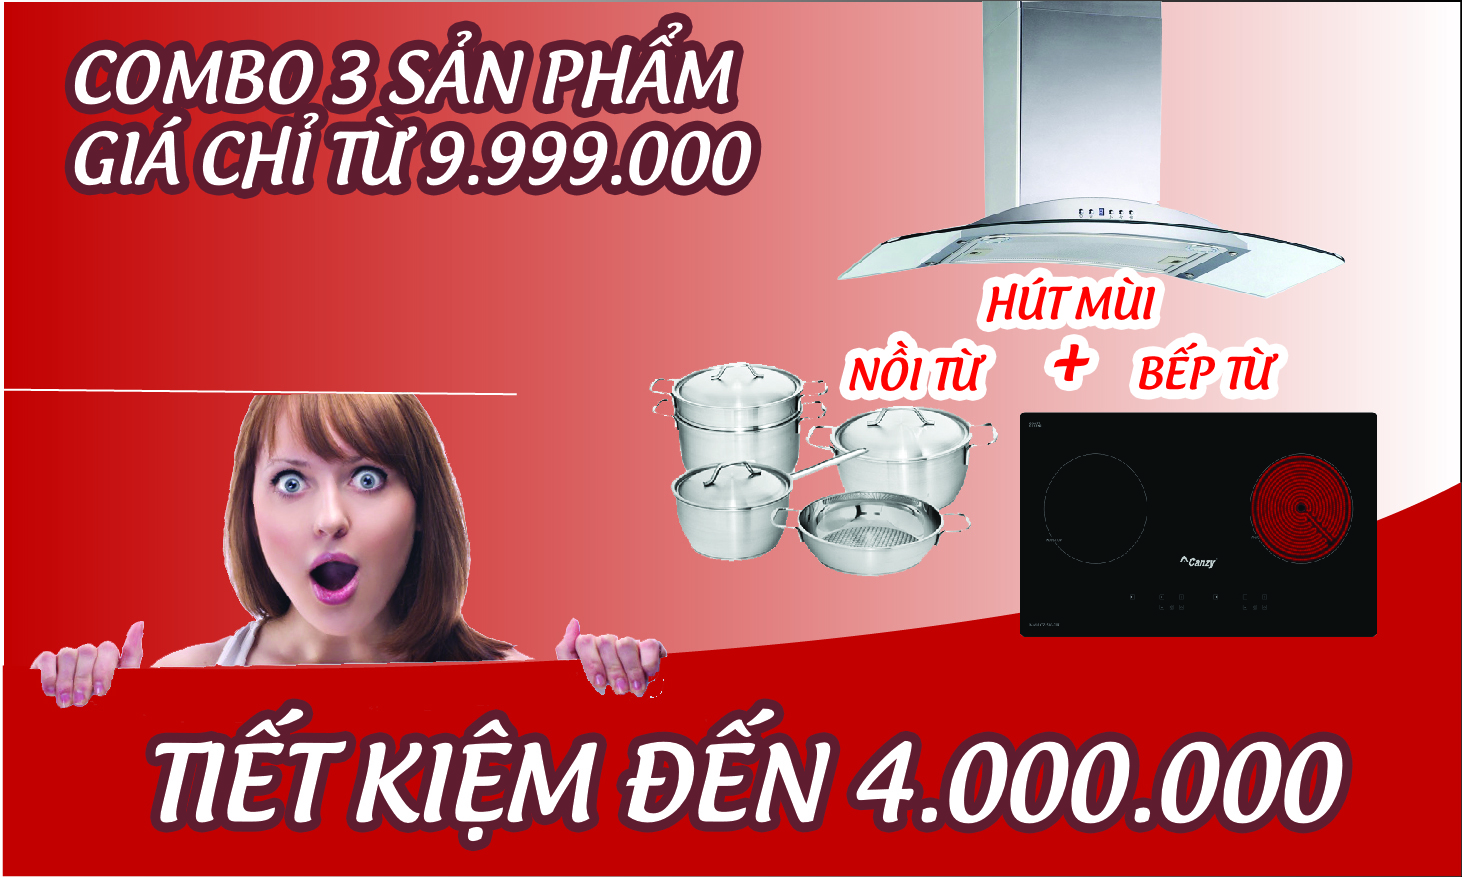 Tiết kiệm tới 4.000.000Đ khi mua bộ combo sản phẩm Bếp từ+hút mùi tại Bếp Việt (từ 01/12/2016-31/01/2017)